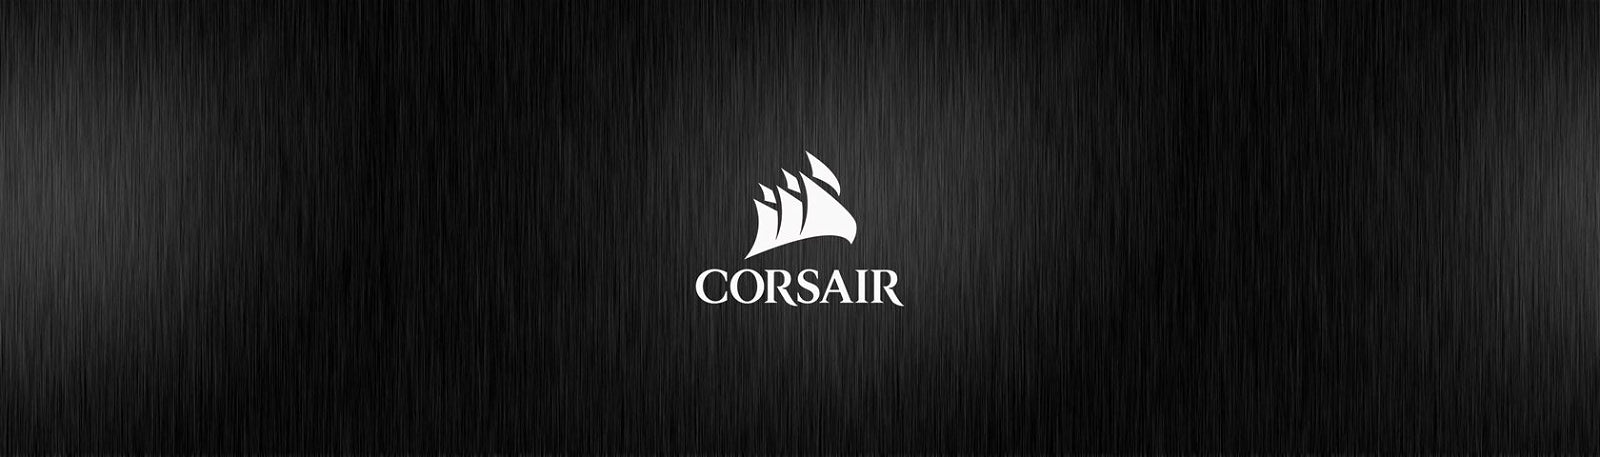 Corsair - Hifi Media Store